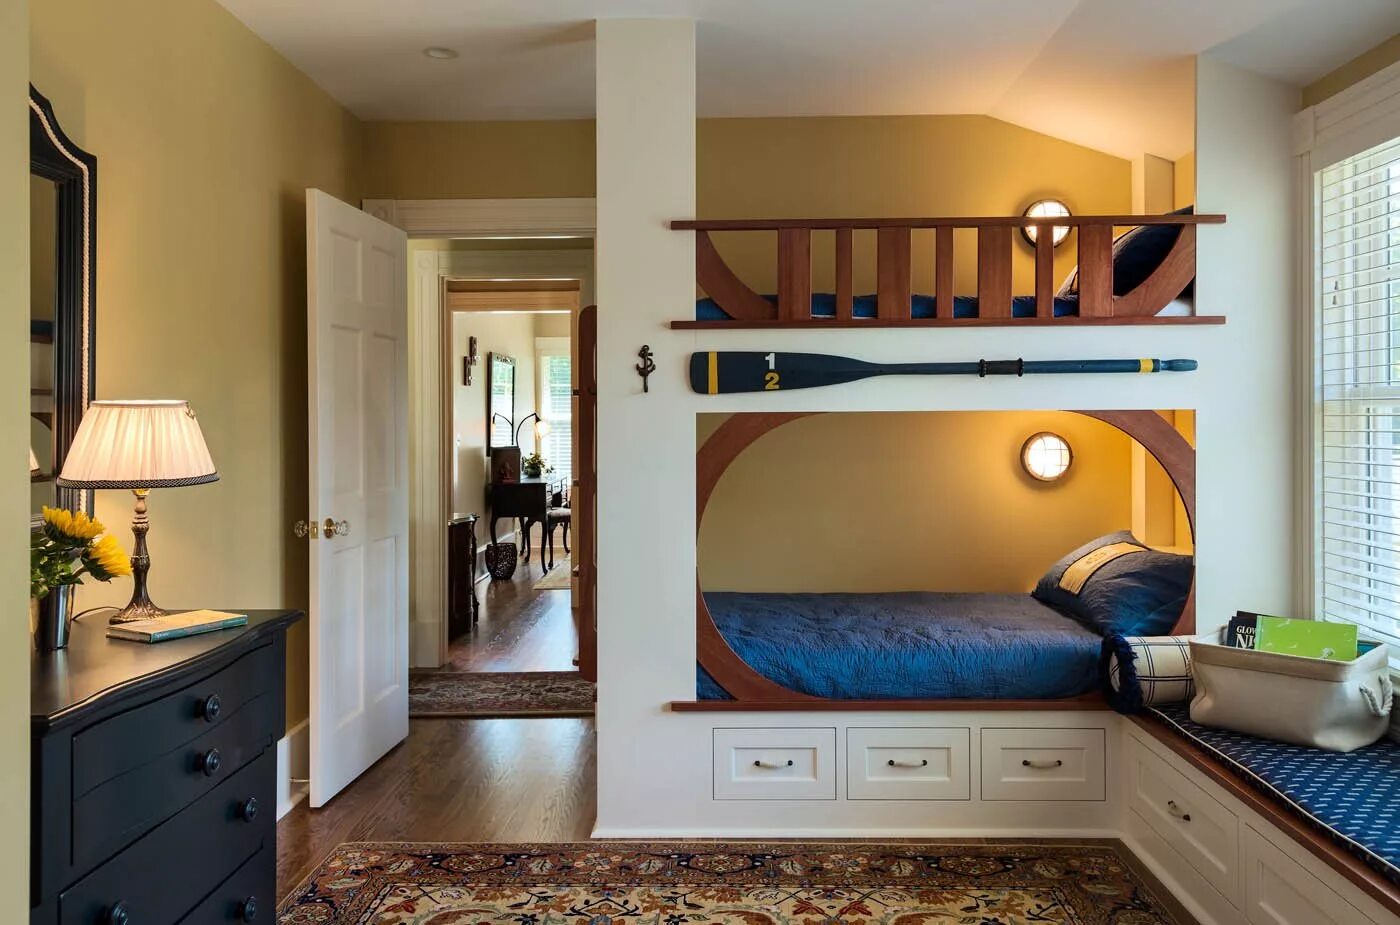 Двухэтажный спальный. Комната с двухъярусной кроватью. Спальня с двухъярусной кроватью. Планировка детской комнаты с двухъярусной кроватью. Комната с двухэтажной кроватью.